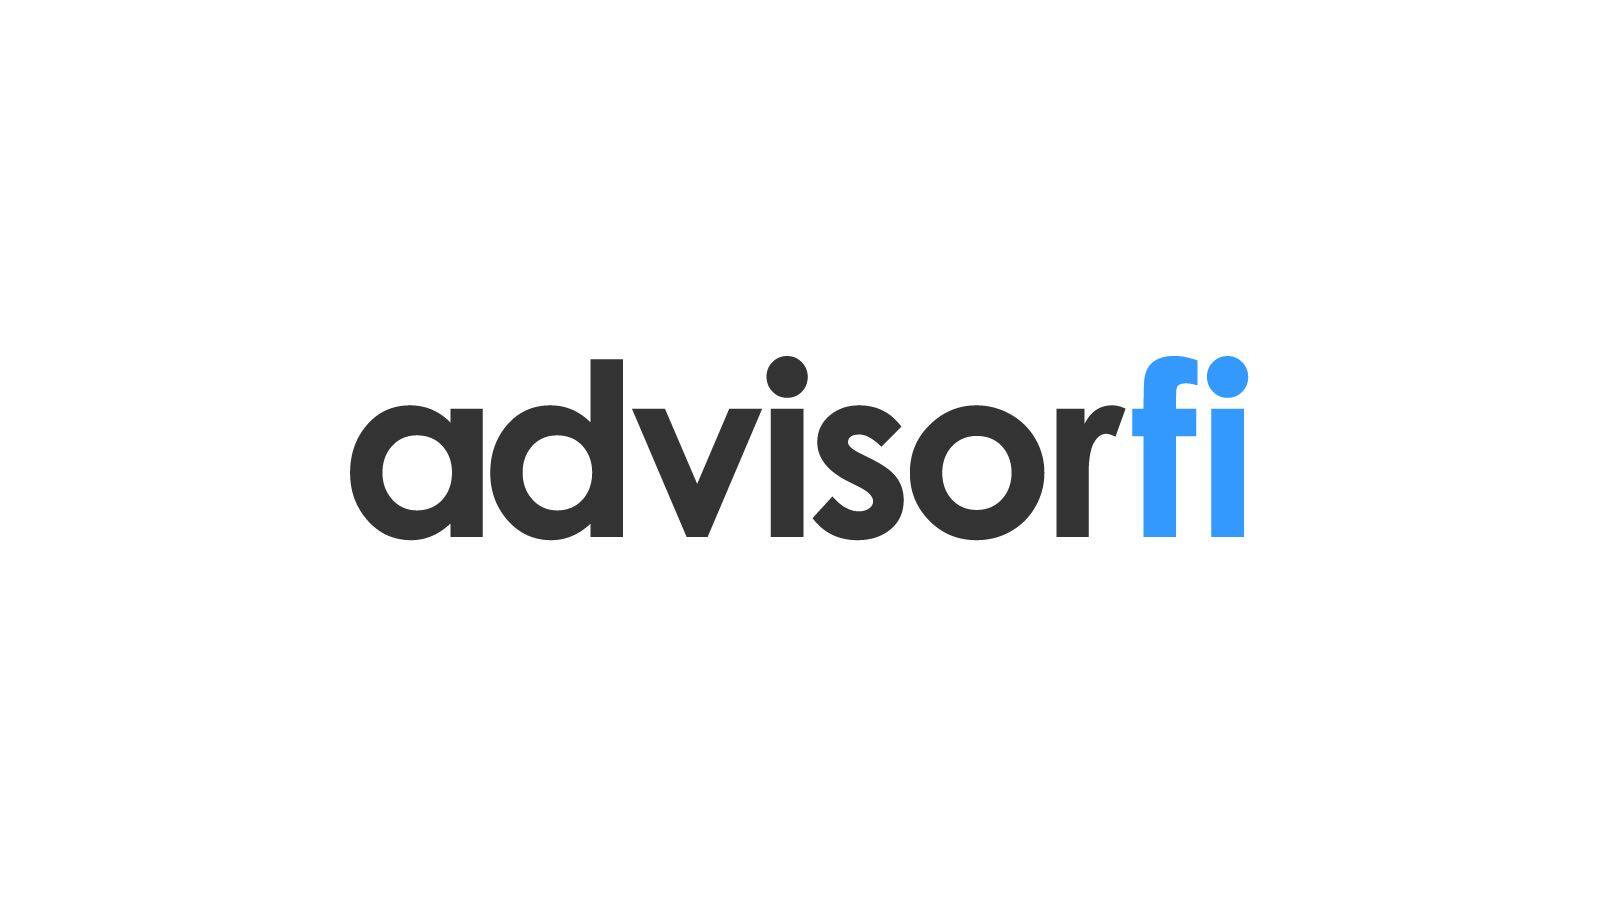 The AdvisorFi.com logo